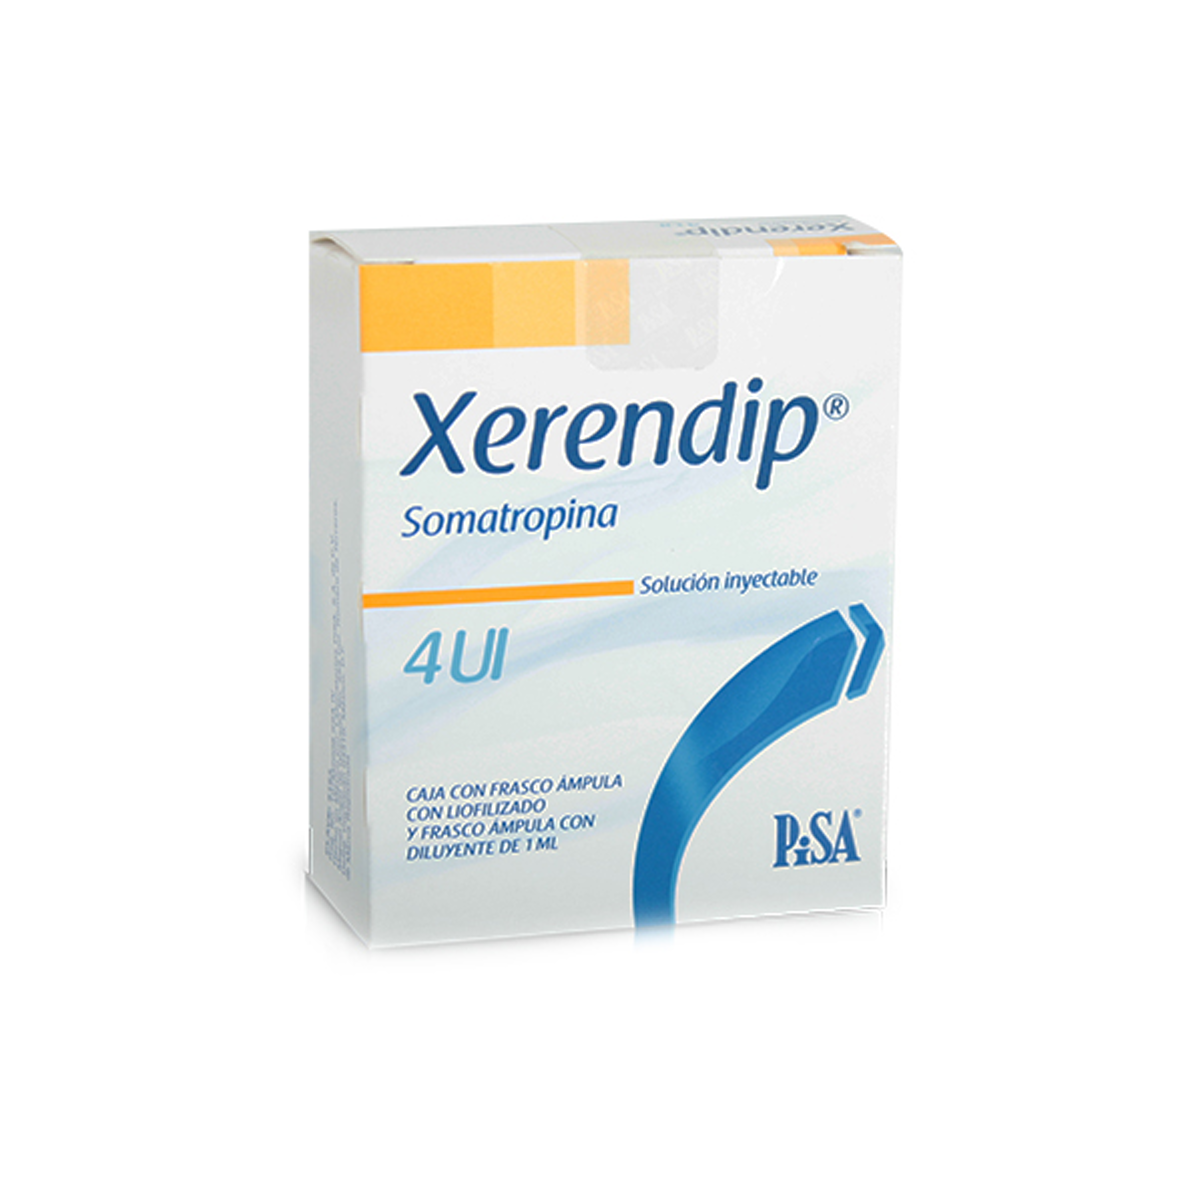 XERENDIP (SOMATROPINA) 1.33 mg 4 ui